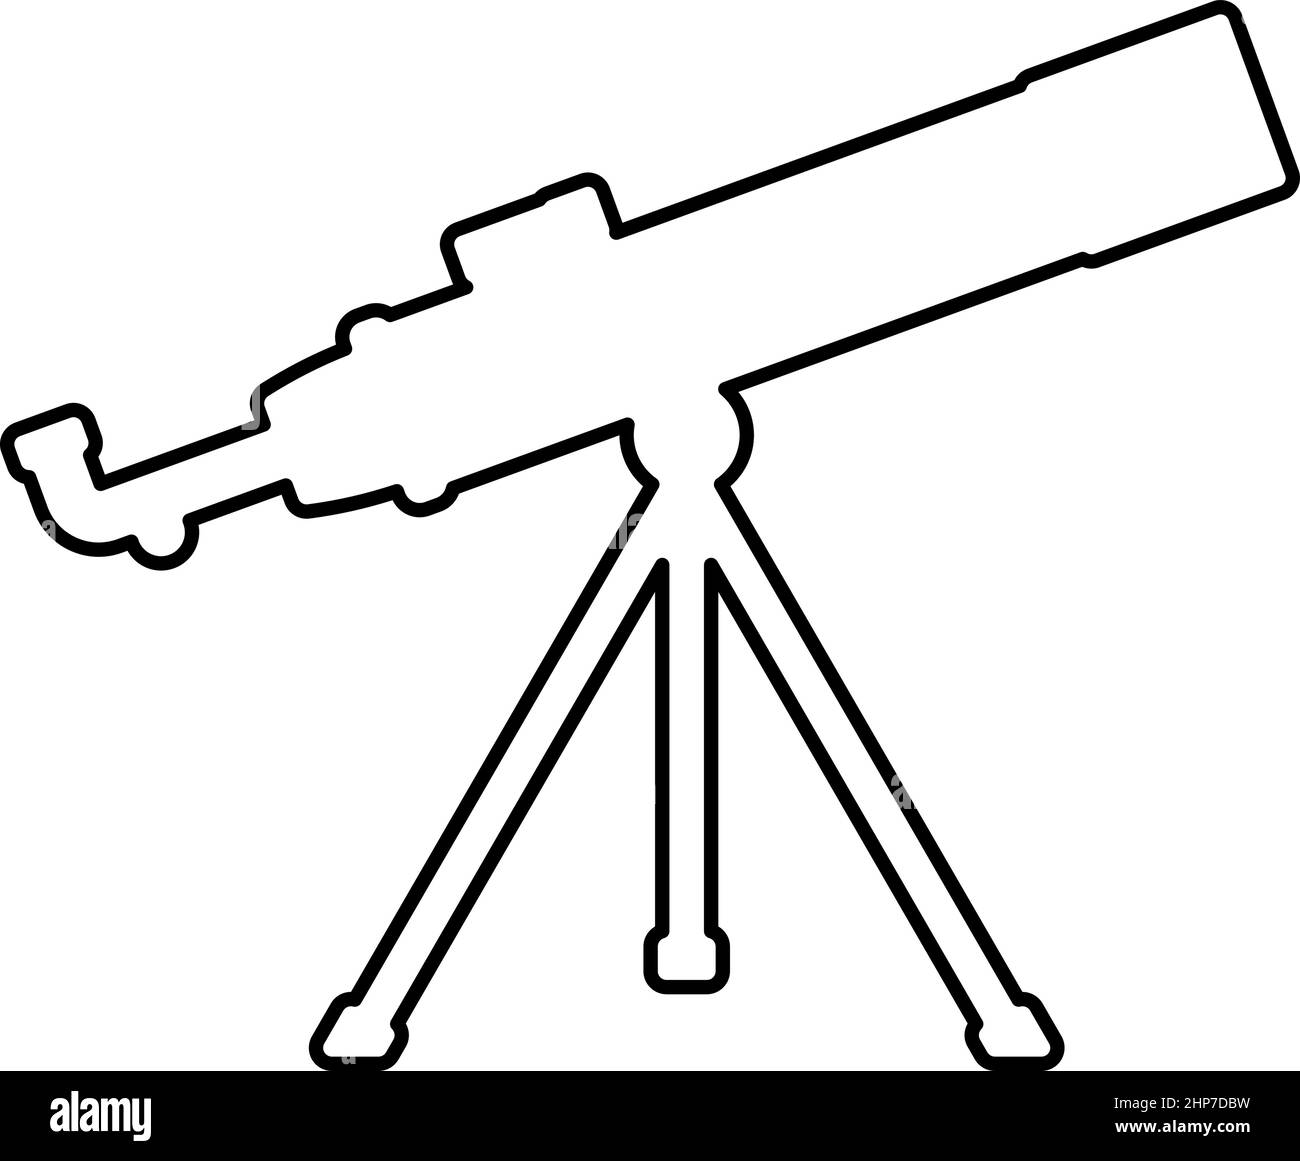 Télescope outil scientifique éducation matériel d'astronomie contour icône couleur noire vecteur illustration image plate de style Illustration de Vecteur